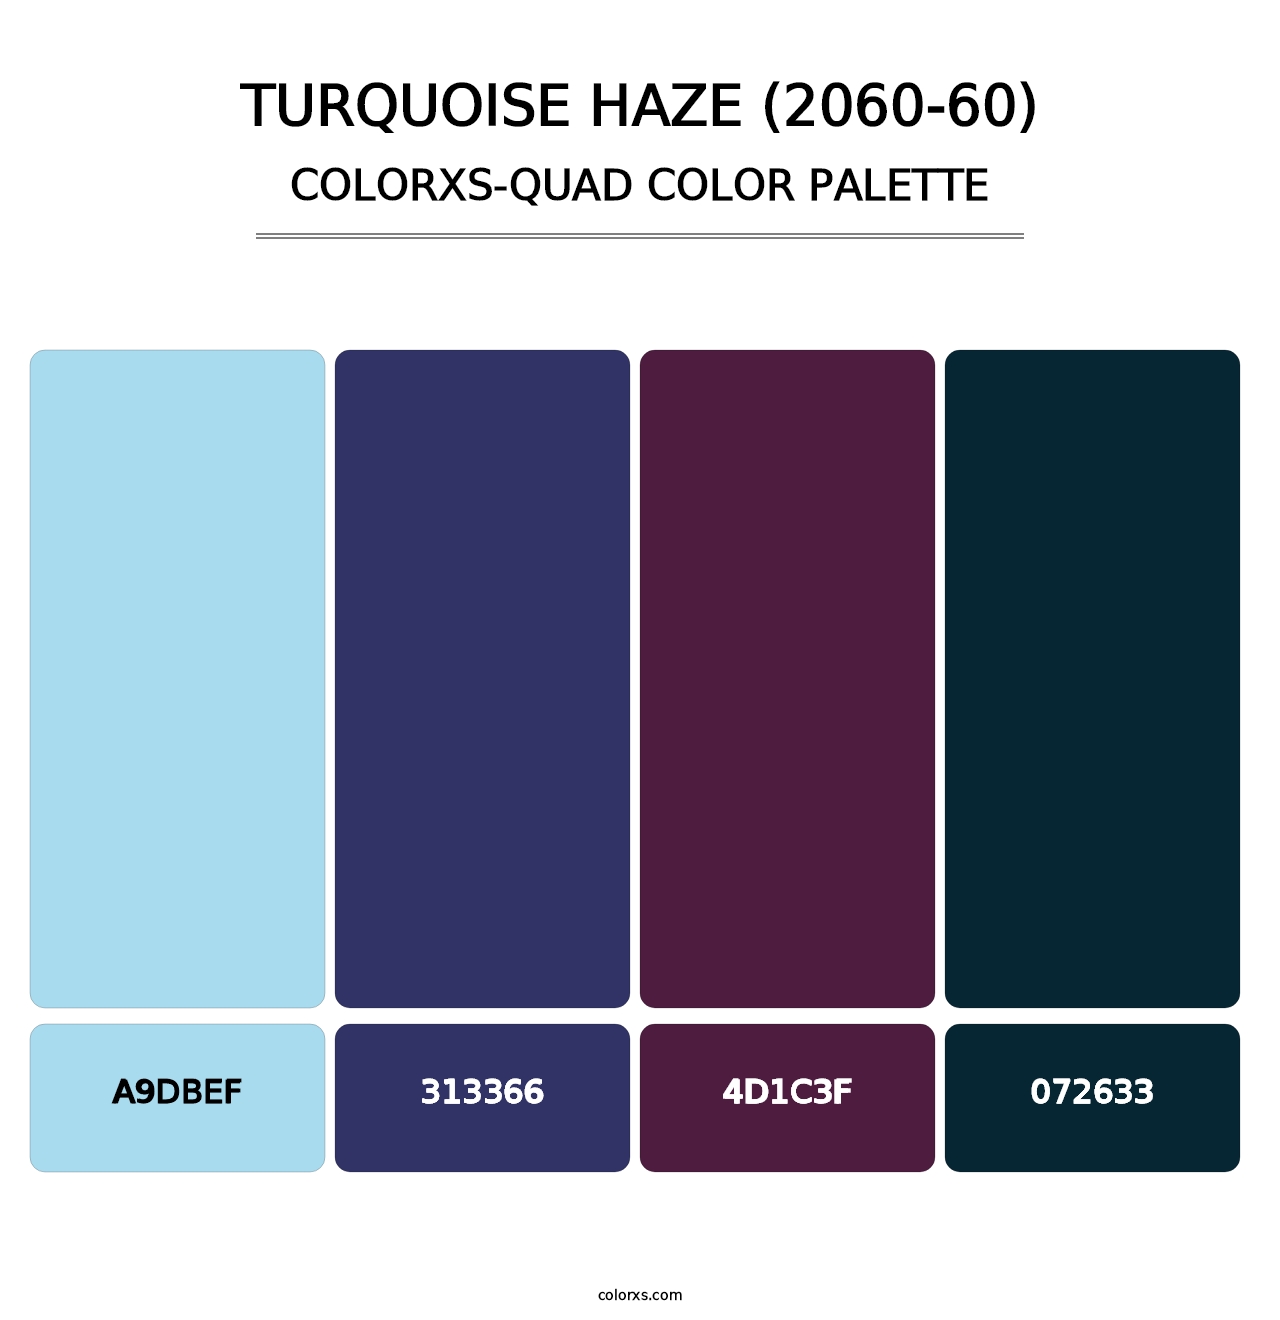 Turquoise Haze (2060-60) - Colorxs Quad Palette